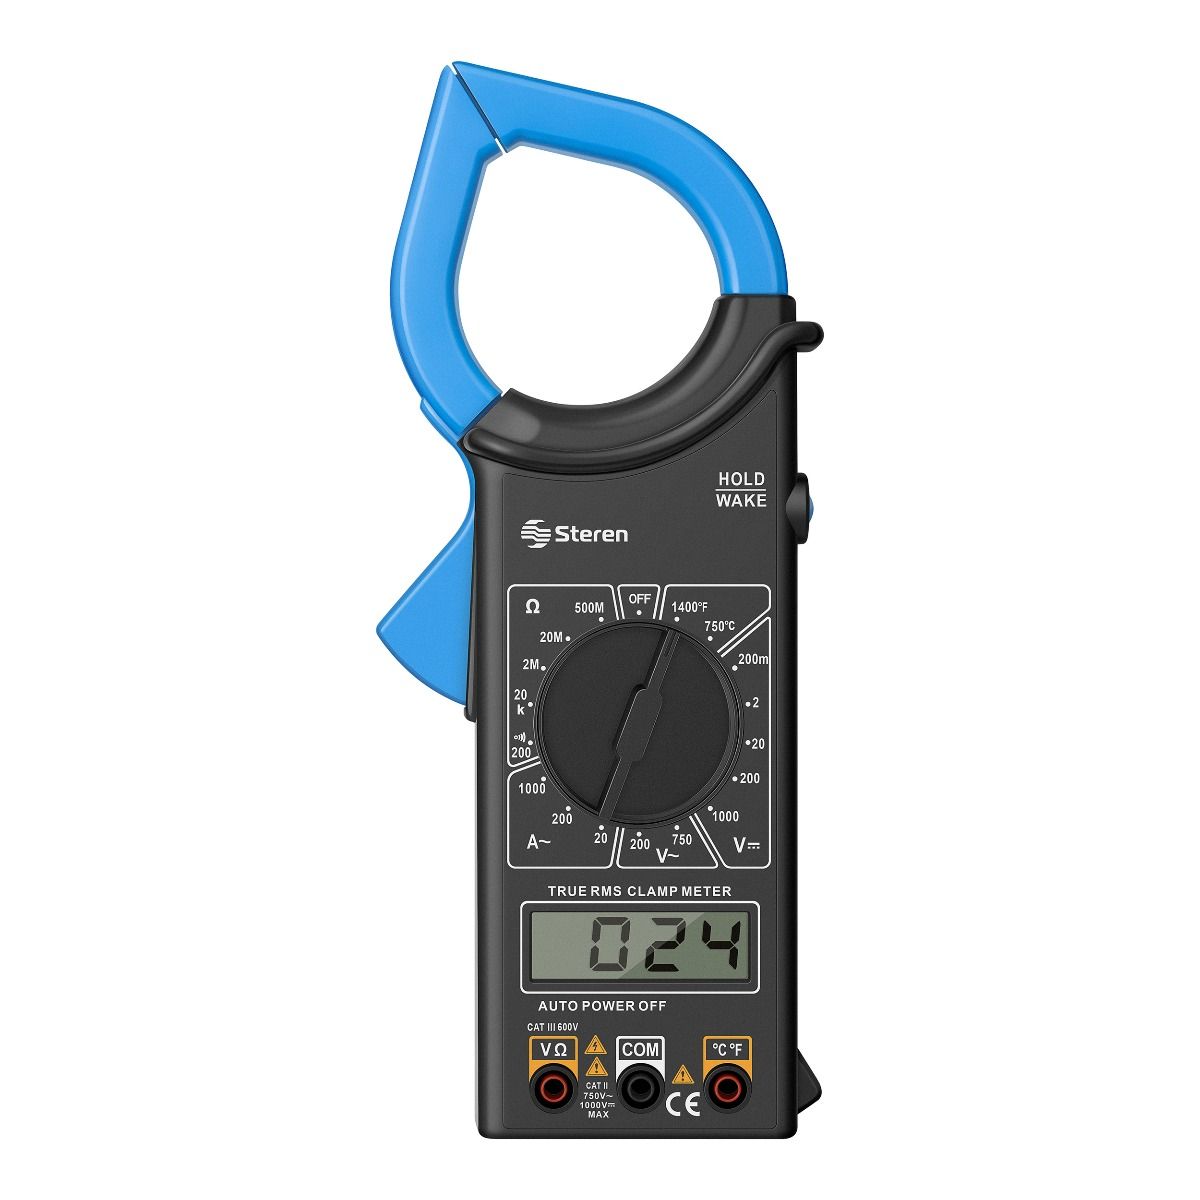 ANENG SZ16 multimetro digital profesional polimetro tester electricista  metro voltimetro comprobador de corriente instrumentos eléctricos  amperimetro